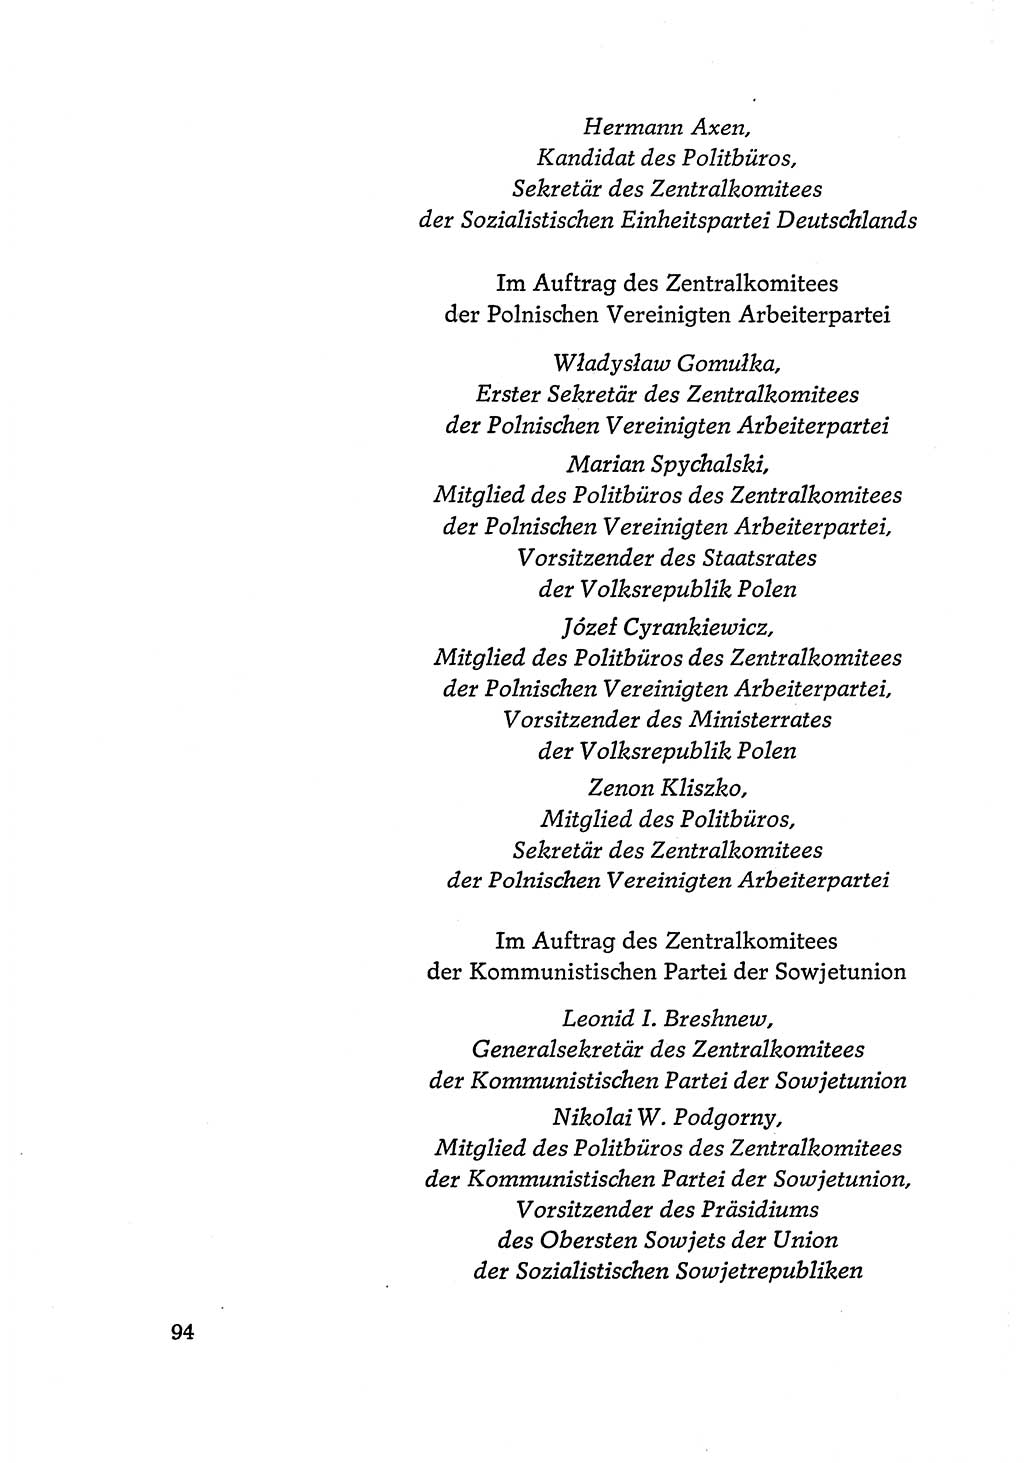 Dokumente der Sozialistischen Einheitspartei Deutschlands (SED) [Deutsche Demokratische Republik (DDR)] 1968-1969, Seite 94 (Dok. SED DDR 1968-1969, S. 94)